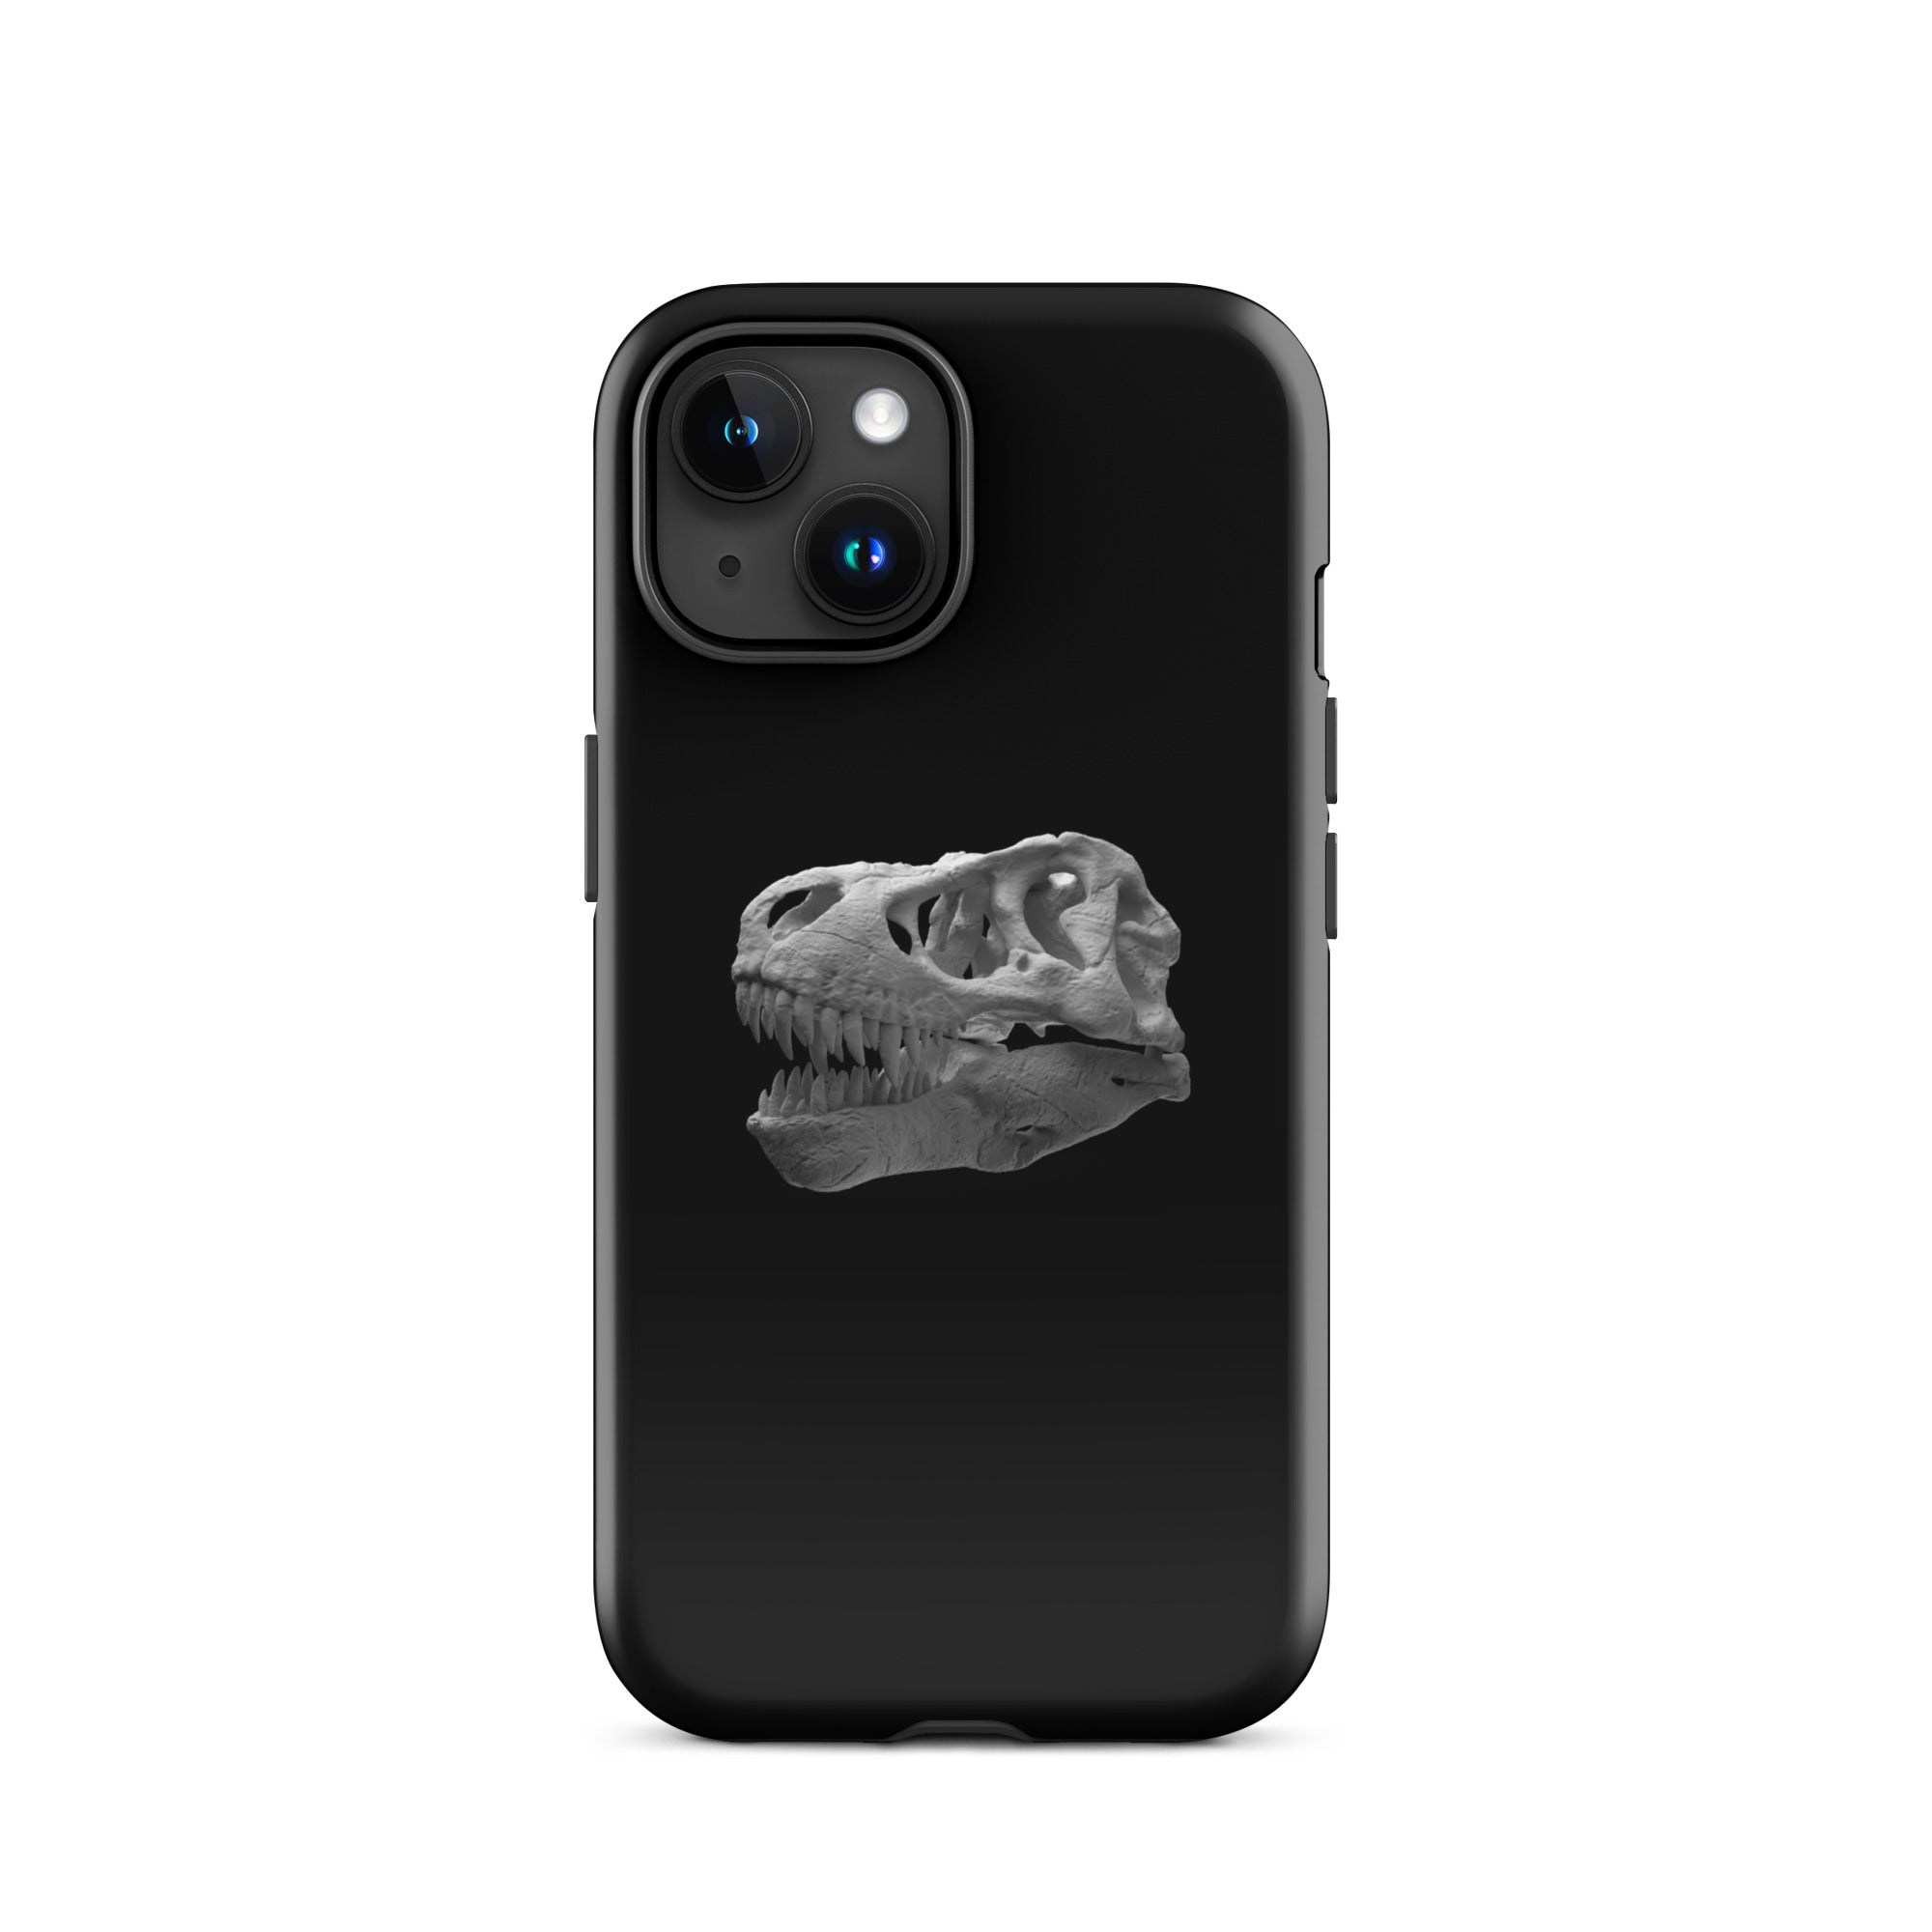 Tyrannosaurus rex skull tough case for iPhone®